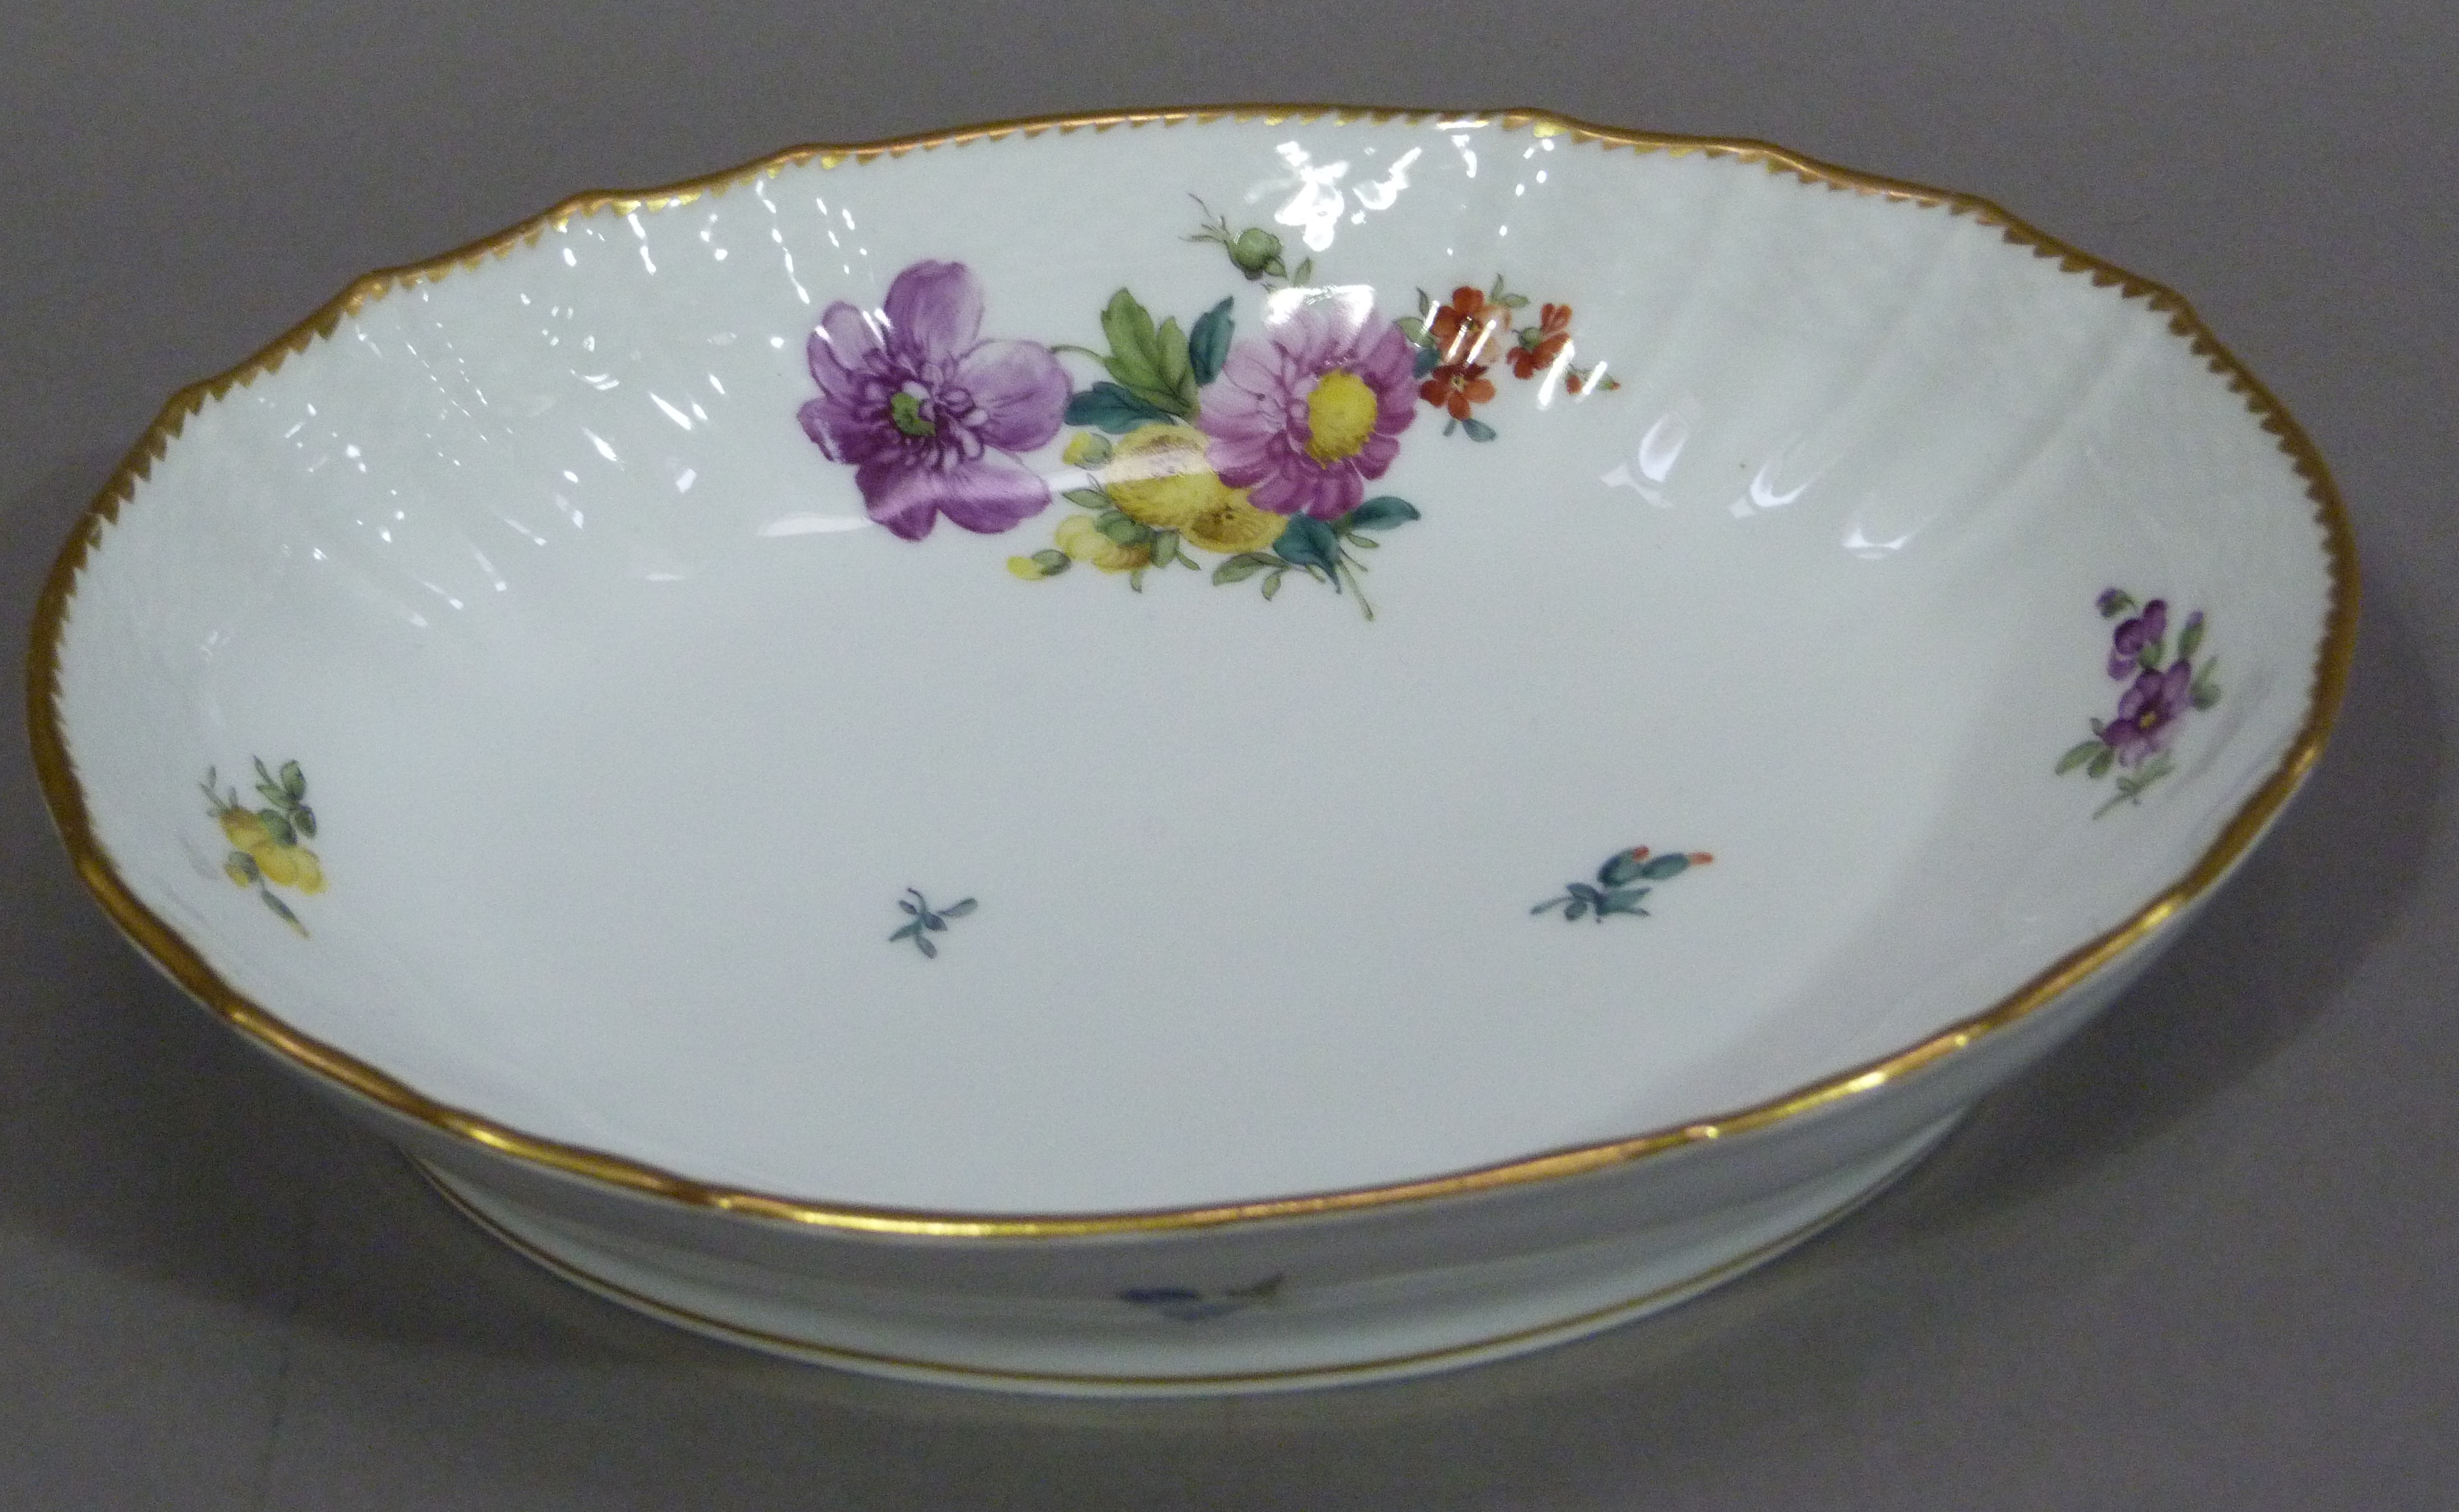 A Royal Copenhagen porcelain oval dish with floral decoration, 21.5cm wide